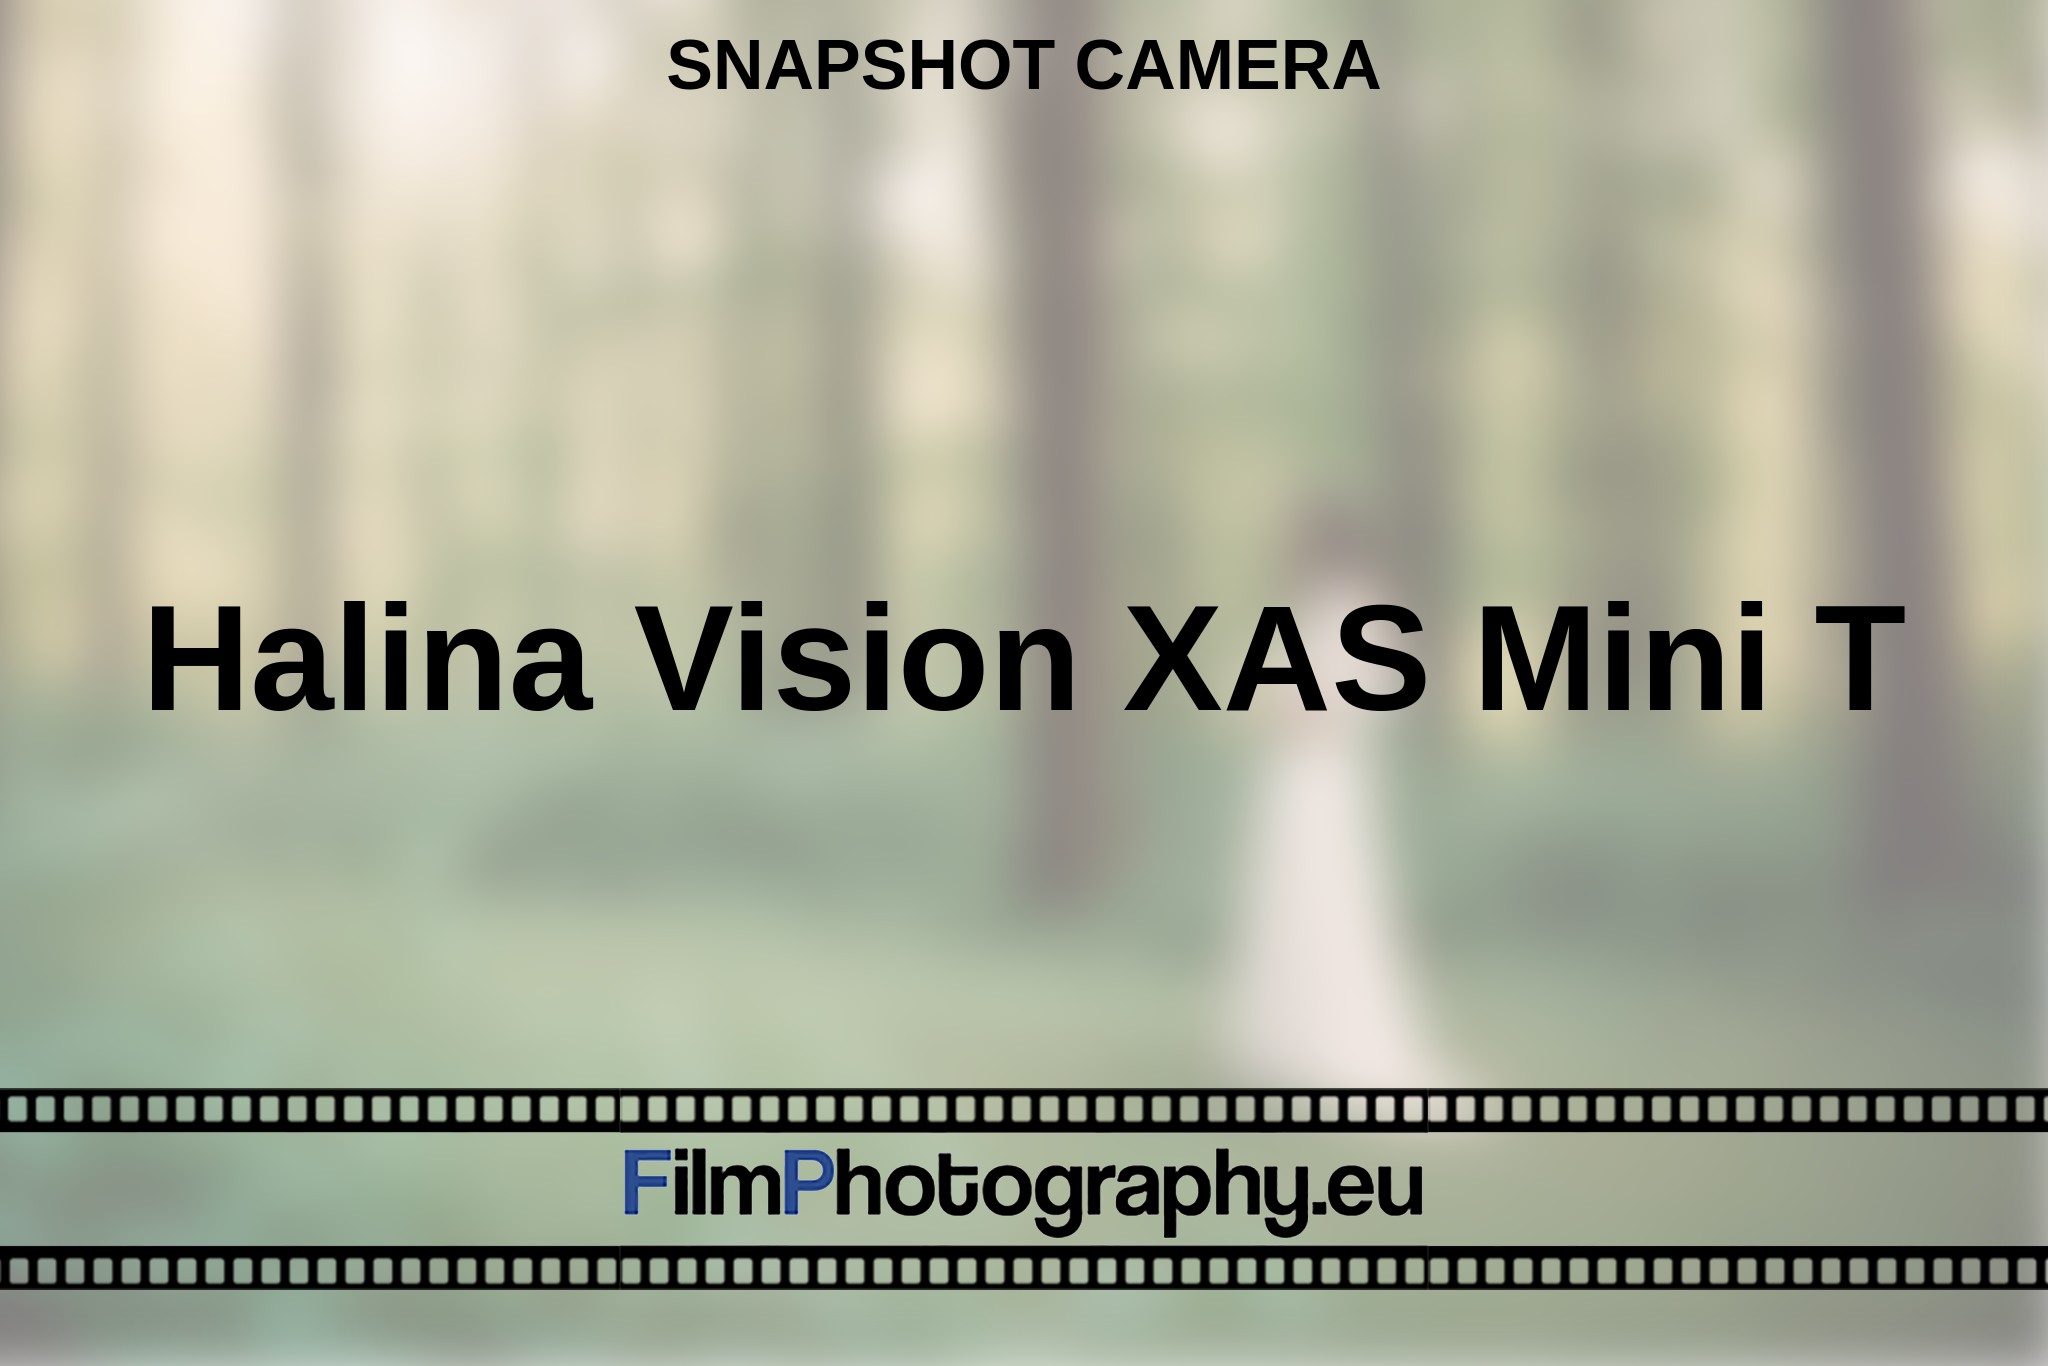 halina-vision-xas-mini-t-snapshot-camera-en-bnv.jpg